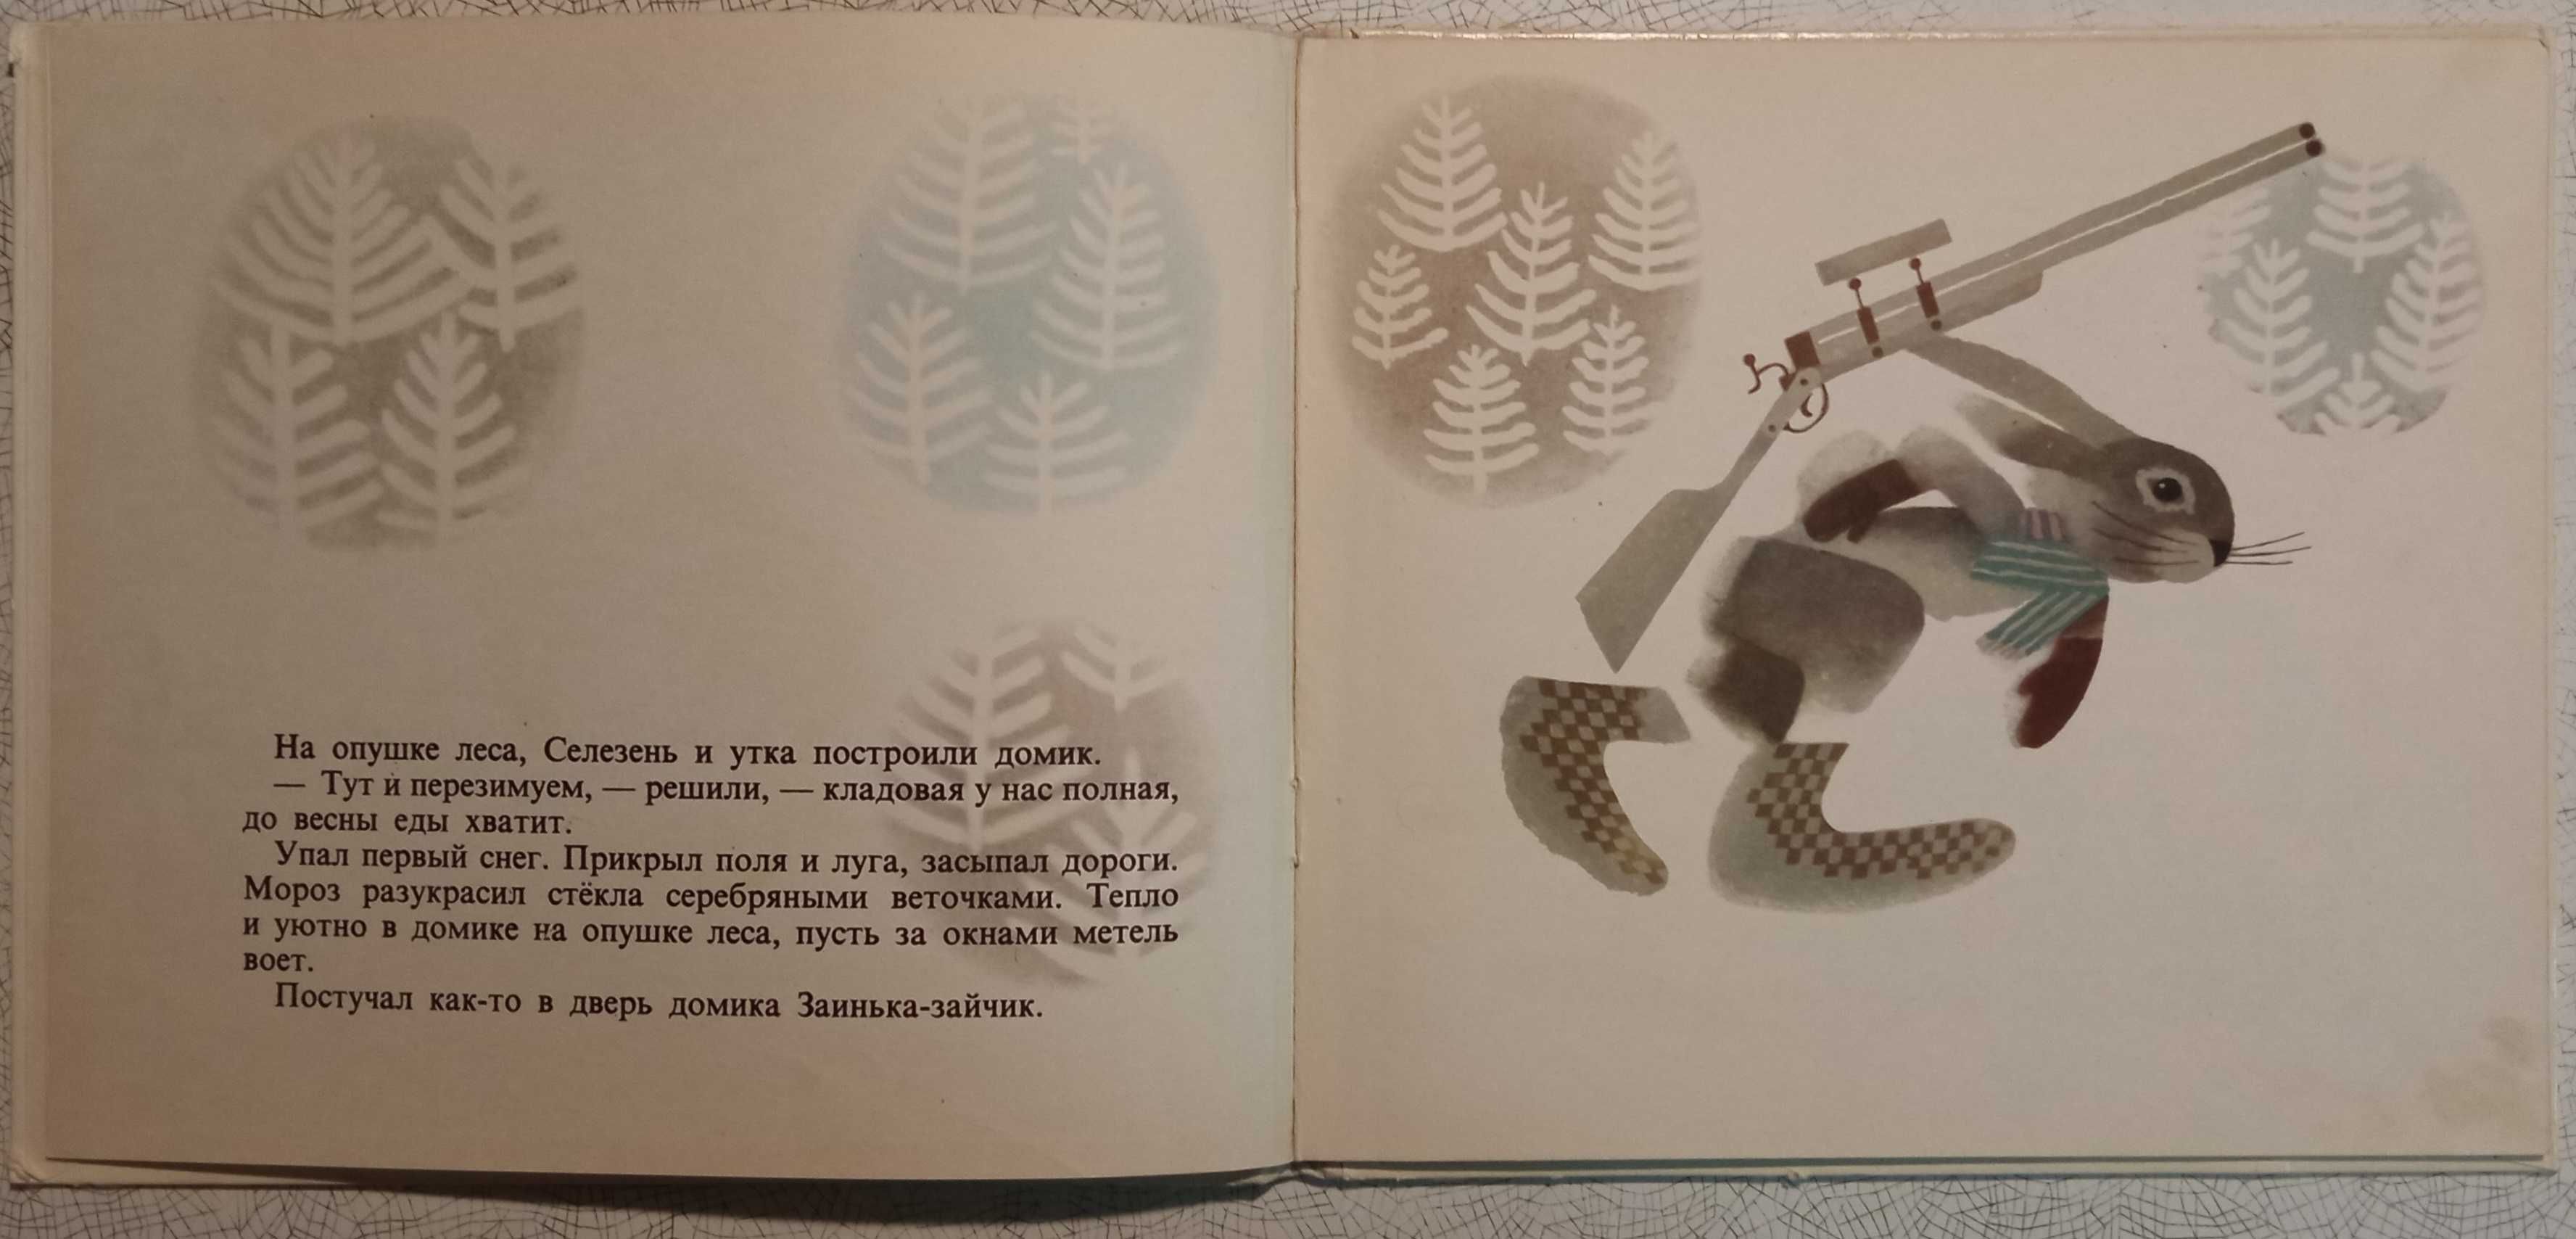 Детская книга "Зайкино ружьё" (Ч. Янчарский) - 1969г. Варшава